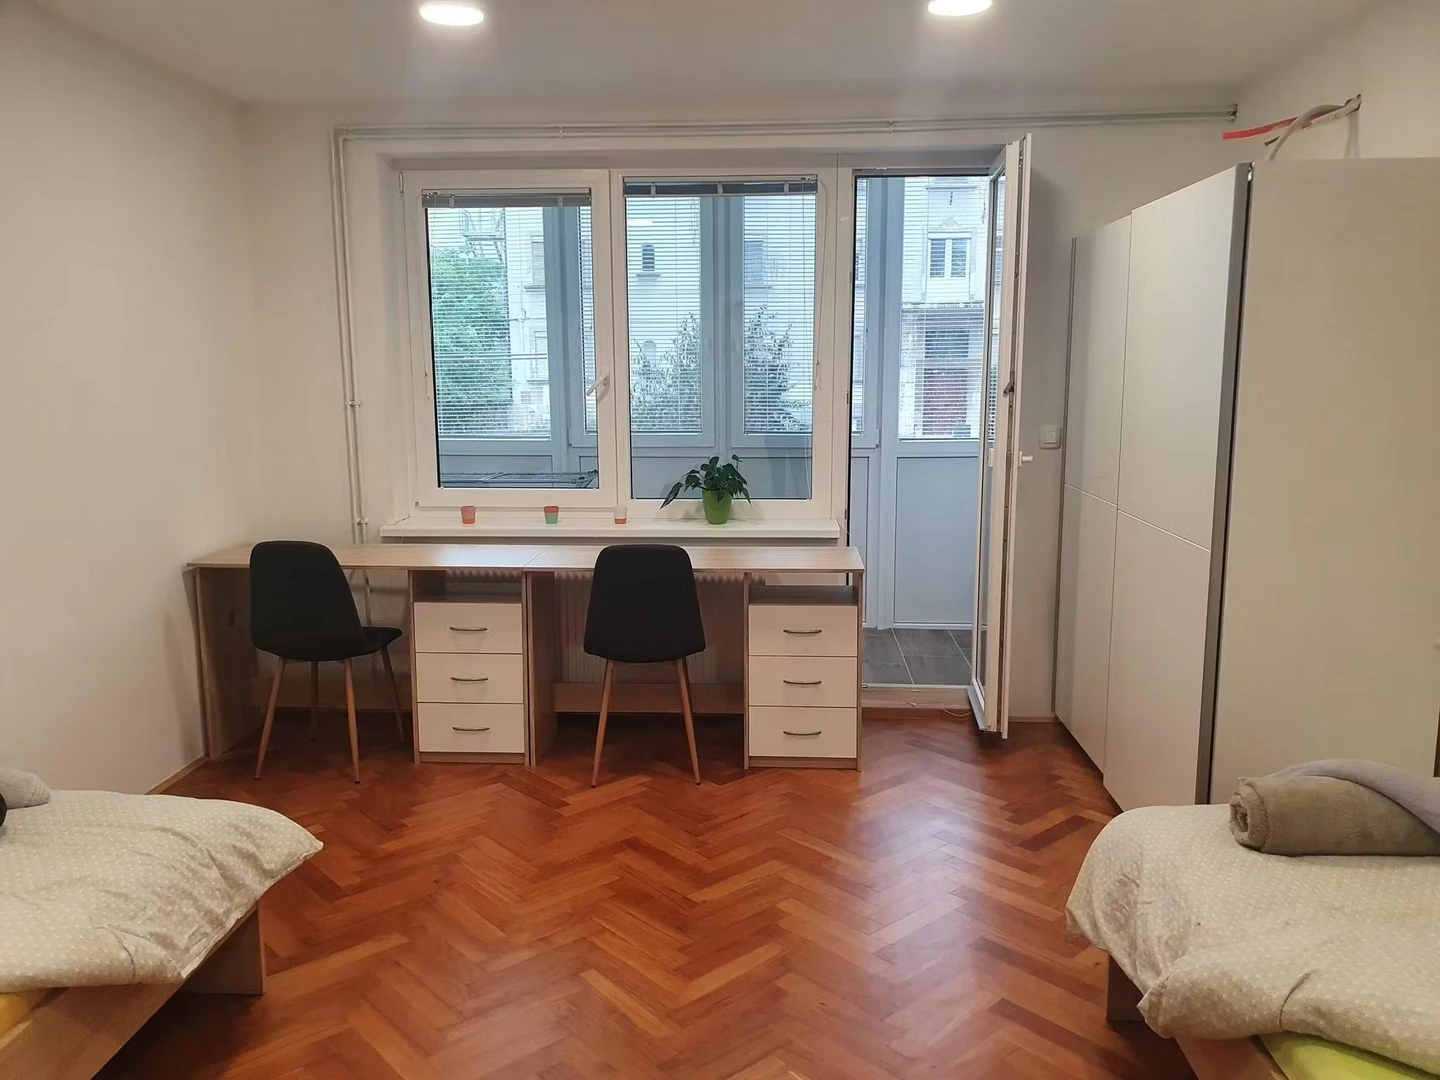 Habitación compartida con otro estudiante en Liubliana